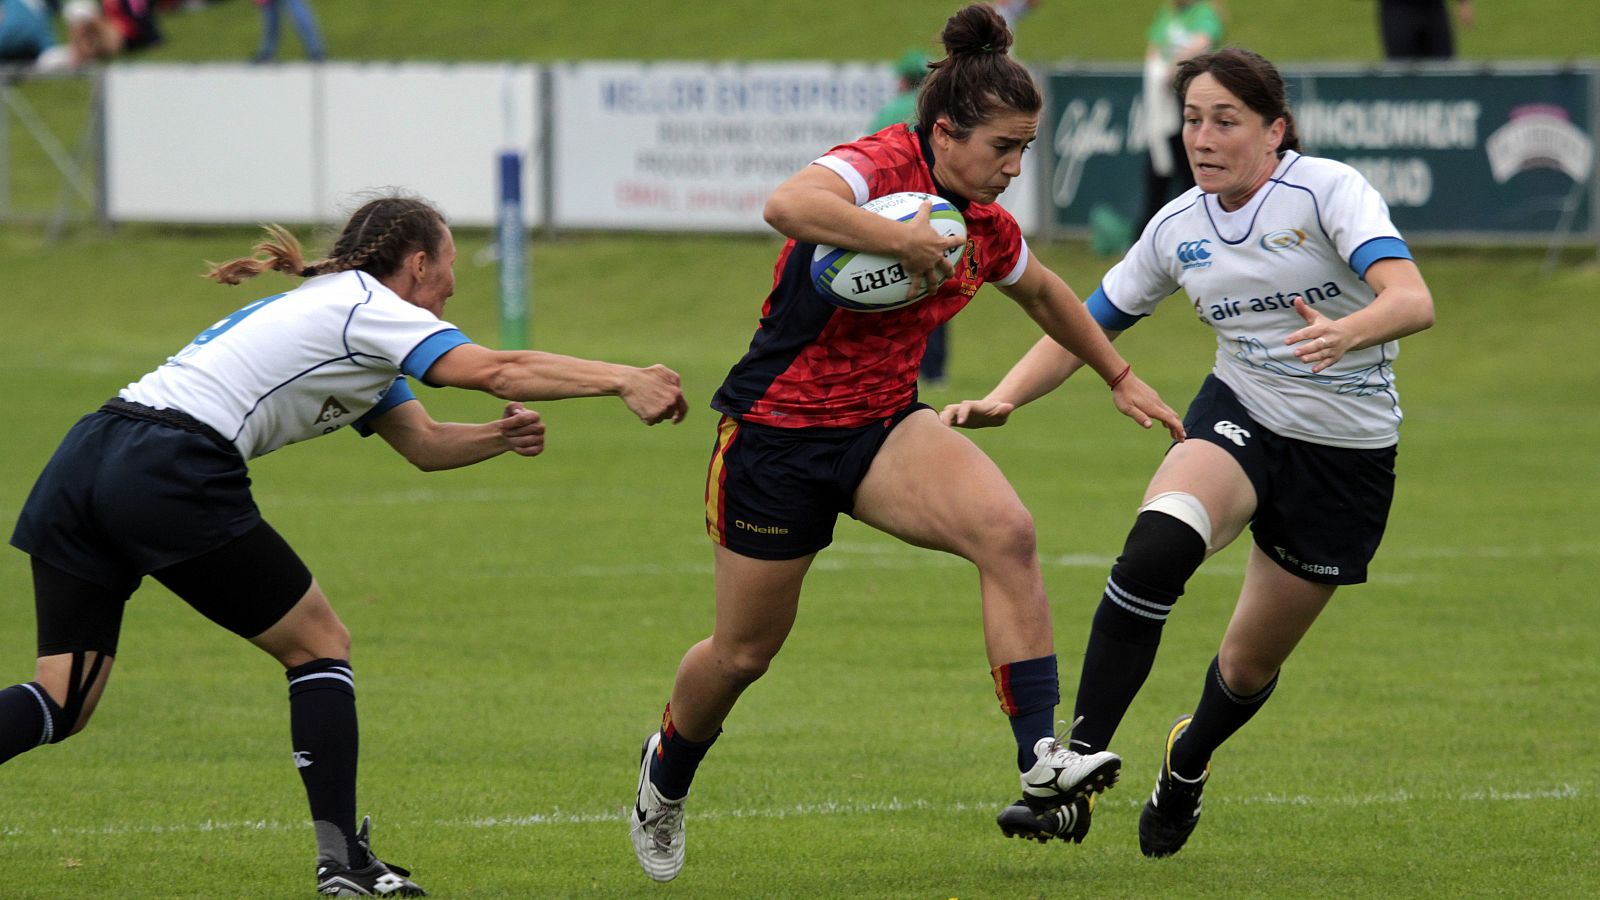 La selección española femenina jugará el primer partido olímpico de la historia de Rugby a siete jugadores. Su primer partido, el 6 de agosto frente a Francia.